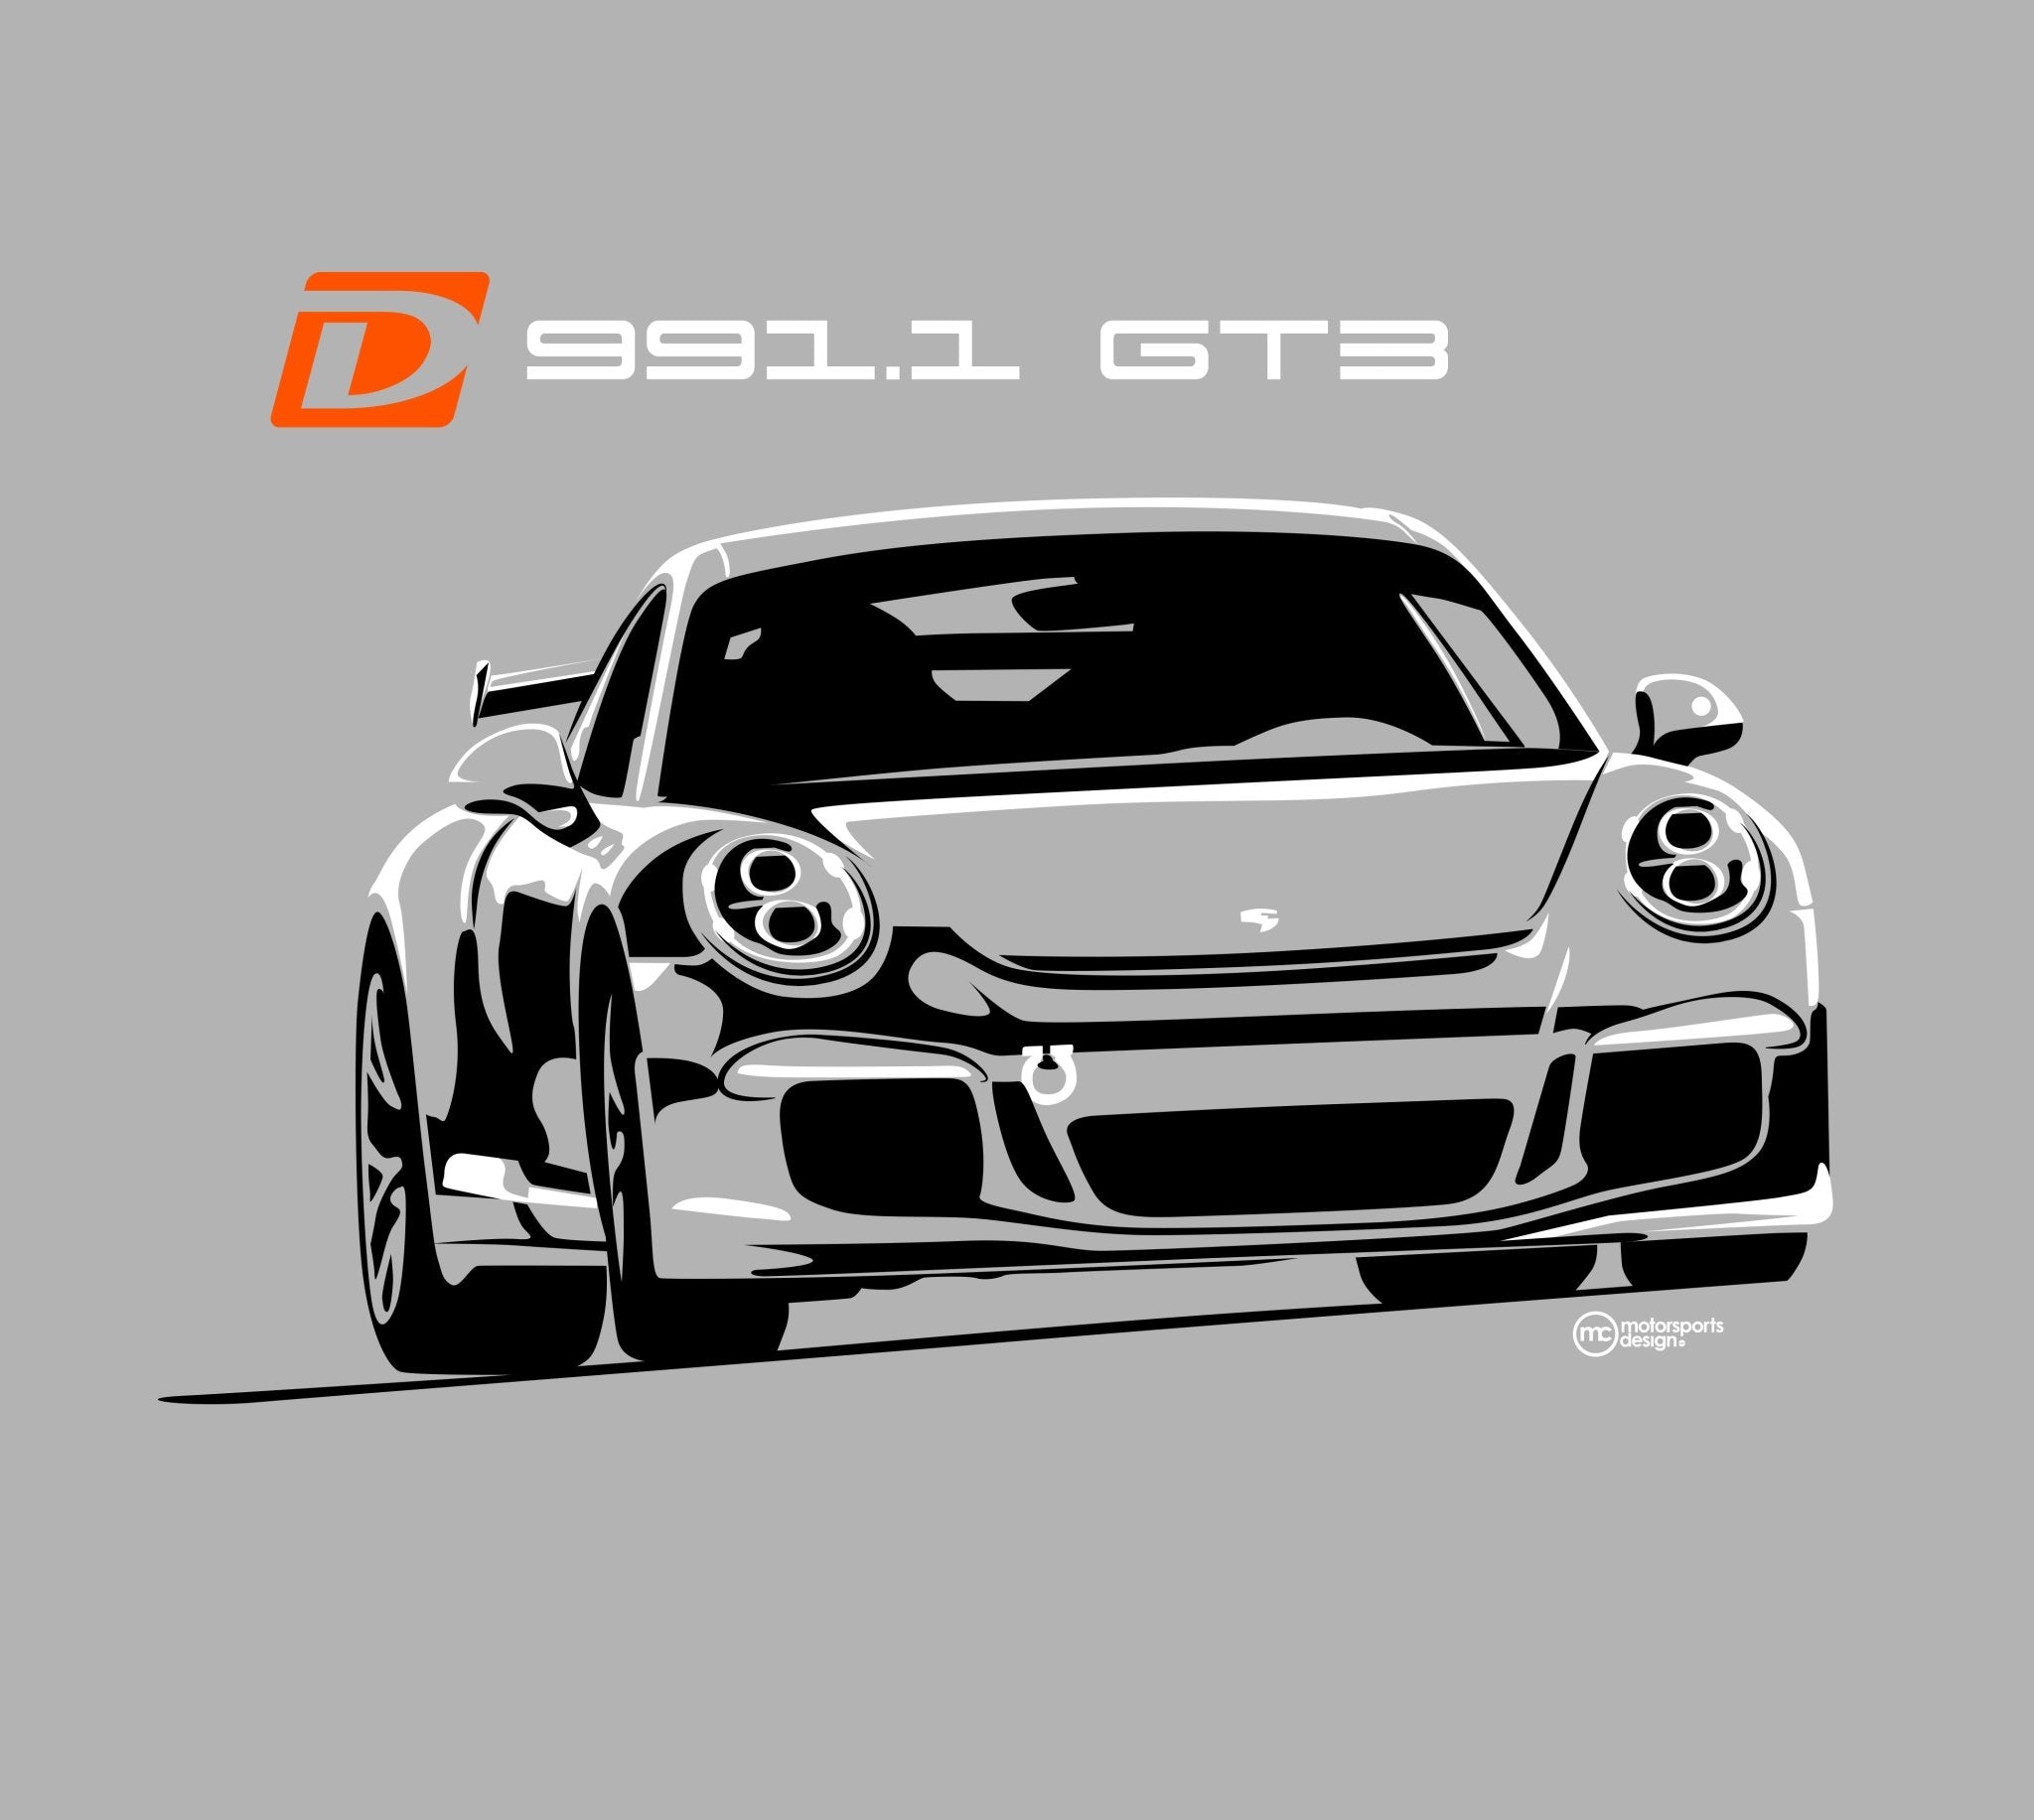 Dundon Motorsports 991.1 GT3 RS T-shirt - Dundon Motorsports